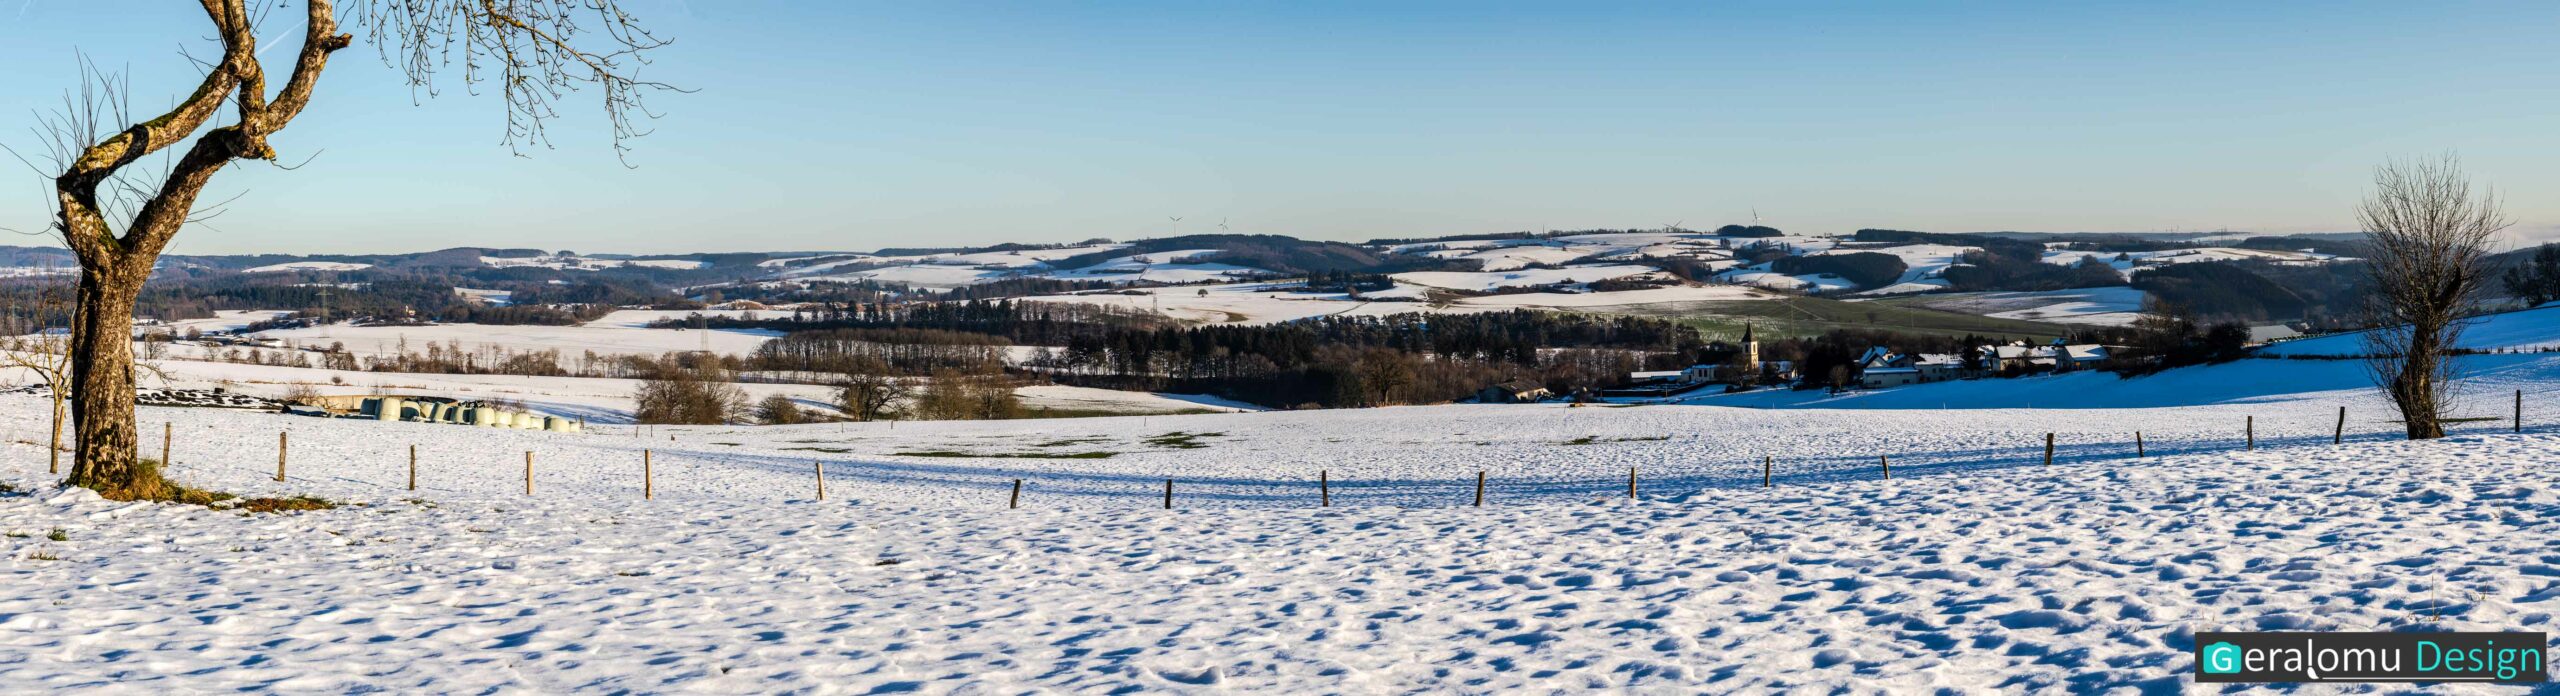 Landschaftsfotografie: Das Bild zeigt einen Panoramablick auf den Ort Niederlauch im Kreis Bitburg-Prüm in schneebedeckter Landschaft.